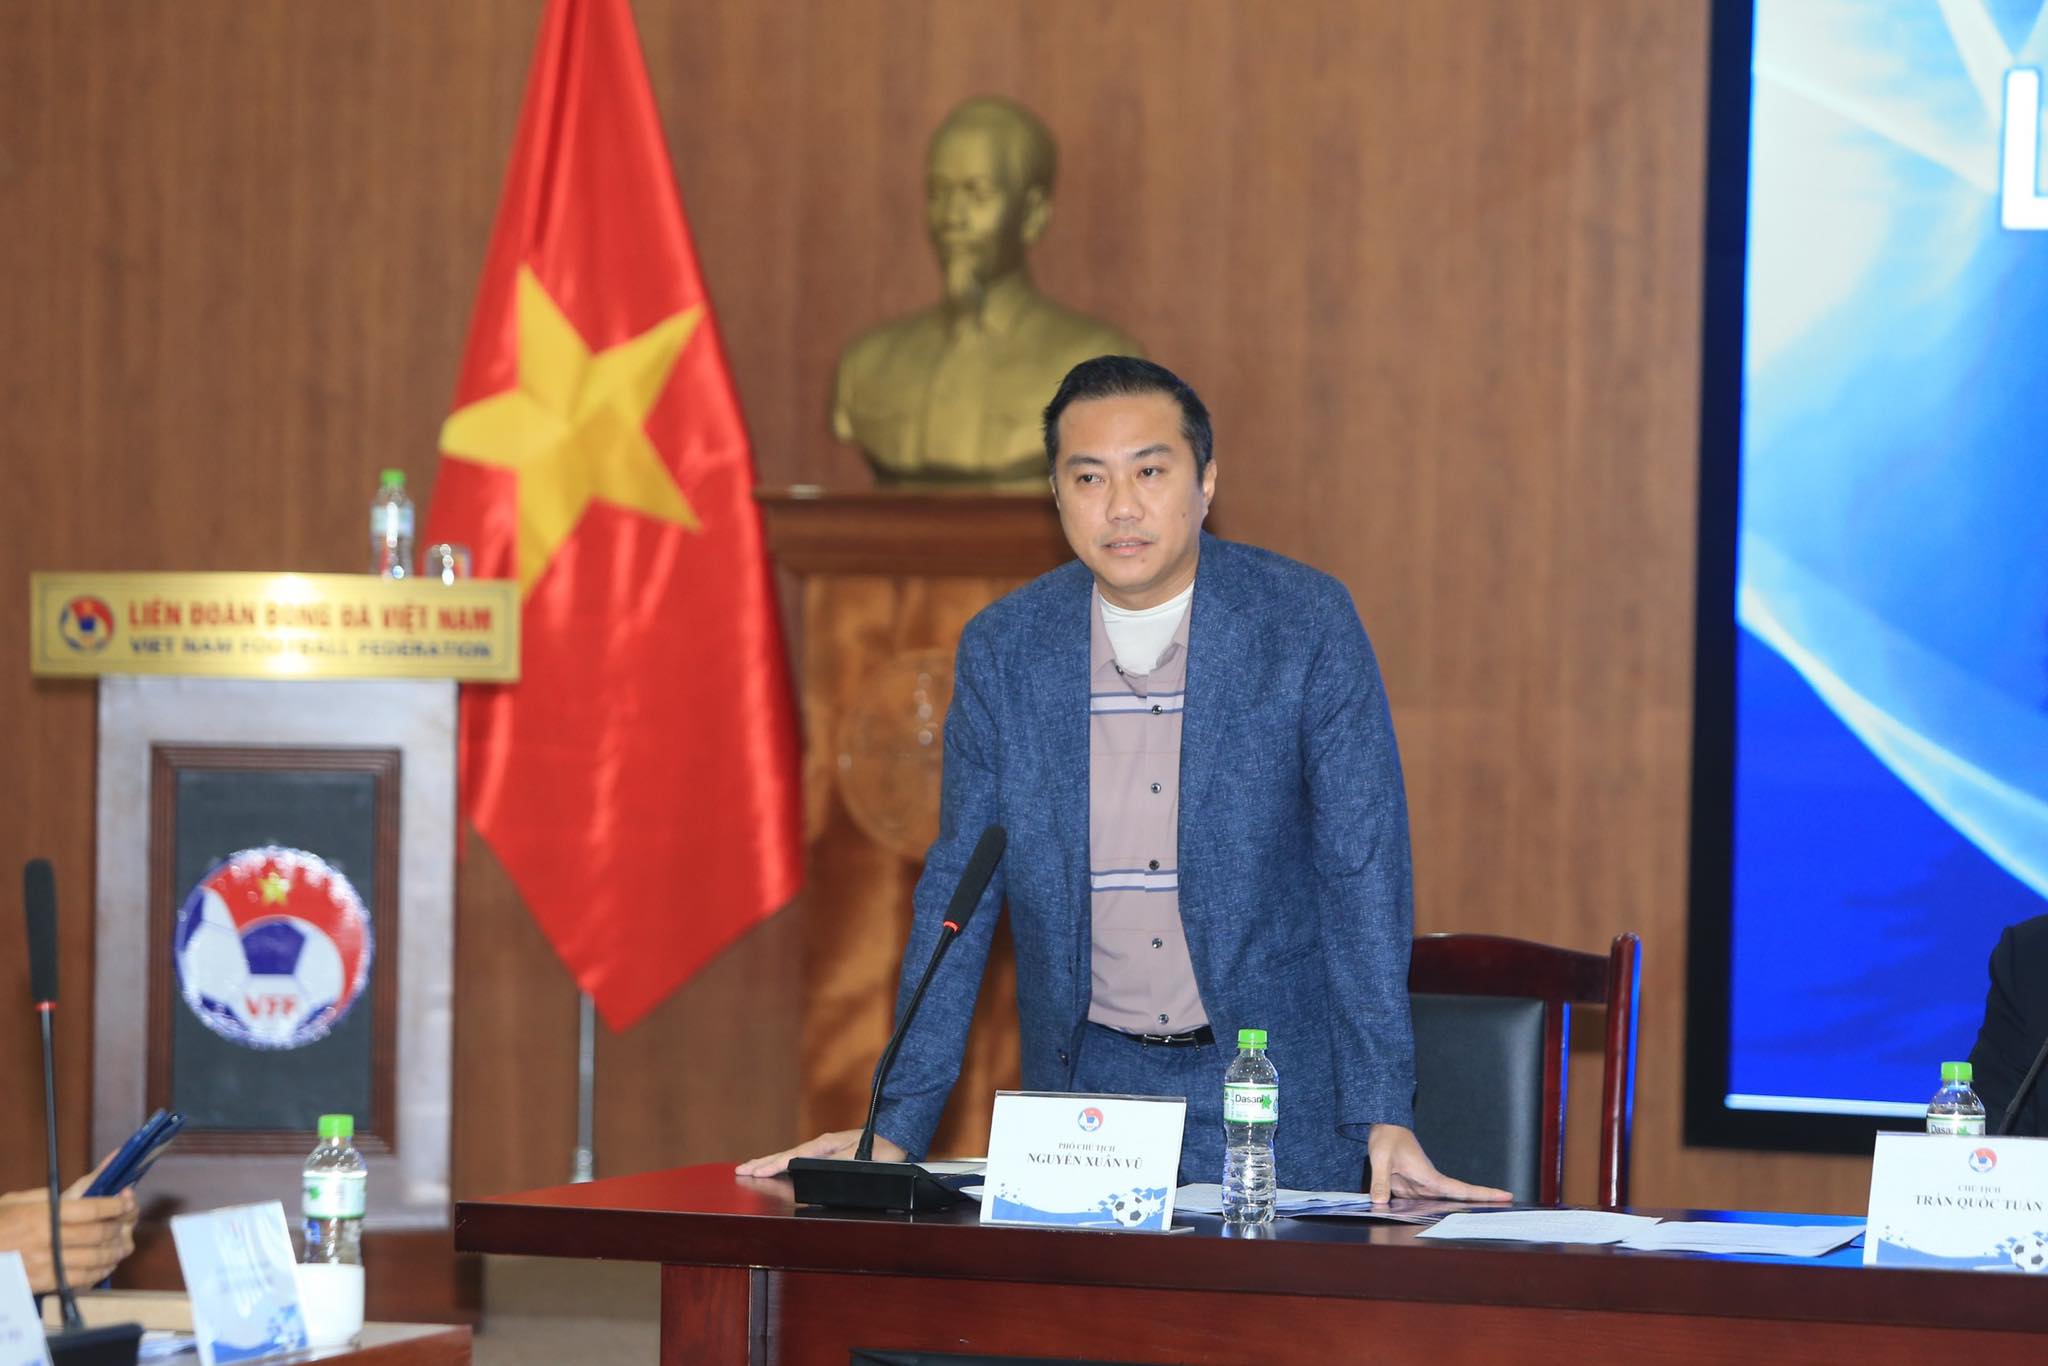 Phó chủ tịch Nguyễn Xuân Vũ phát biểu tại Hội nghị - Ảnh: Đức Cường 